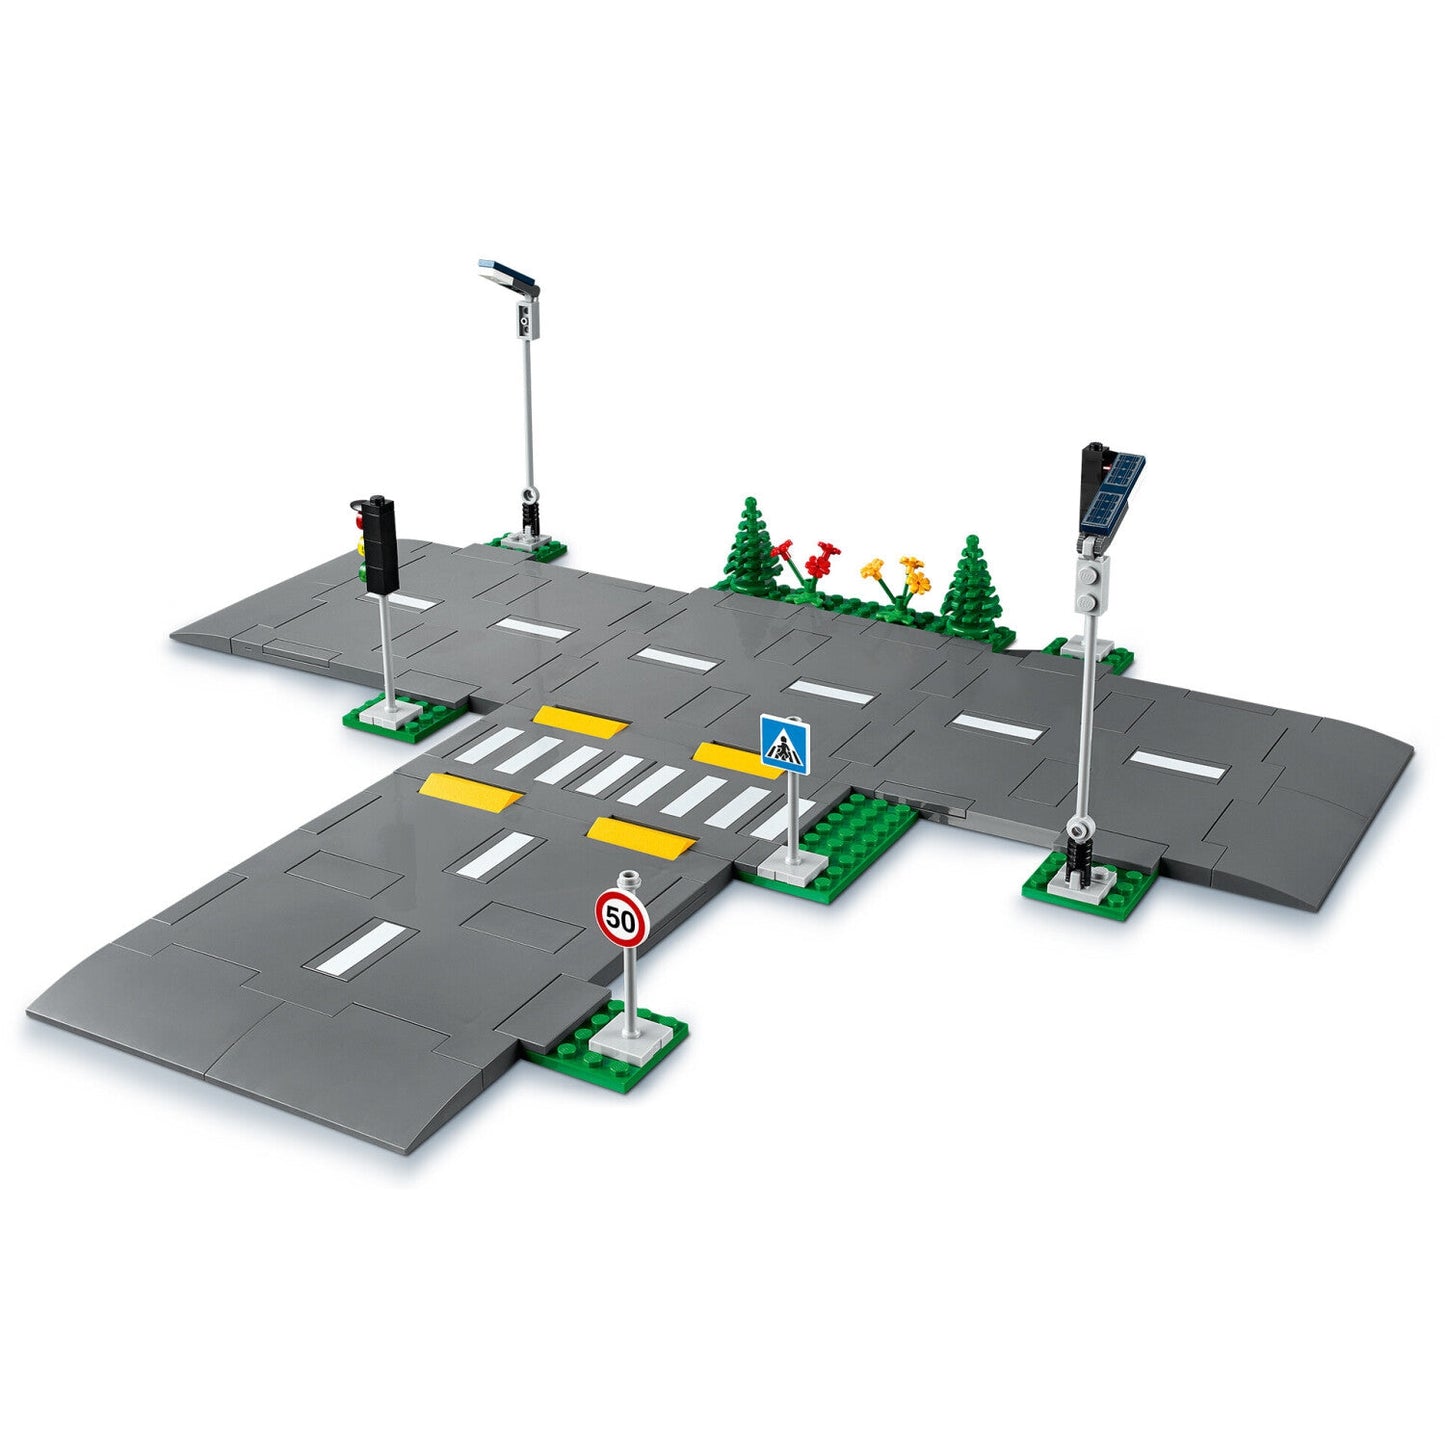 LEGO 60304 City Straßenkreuzung mit Ampeln